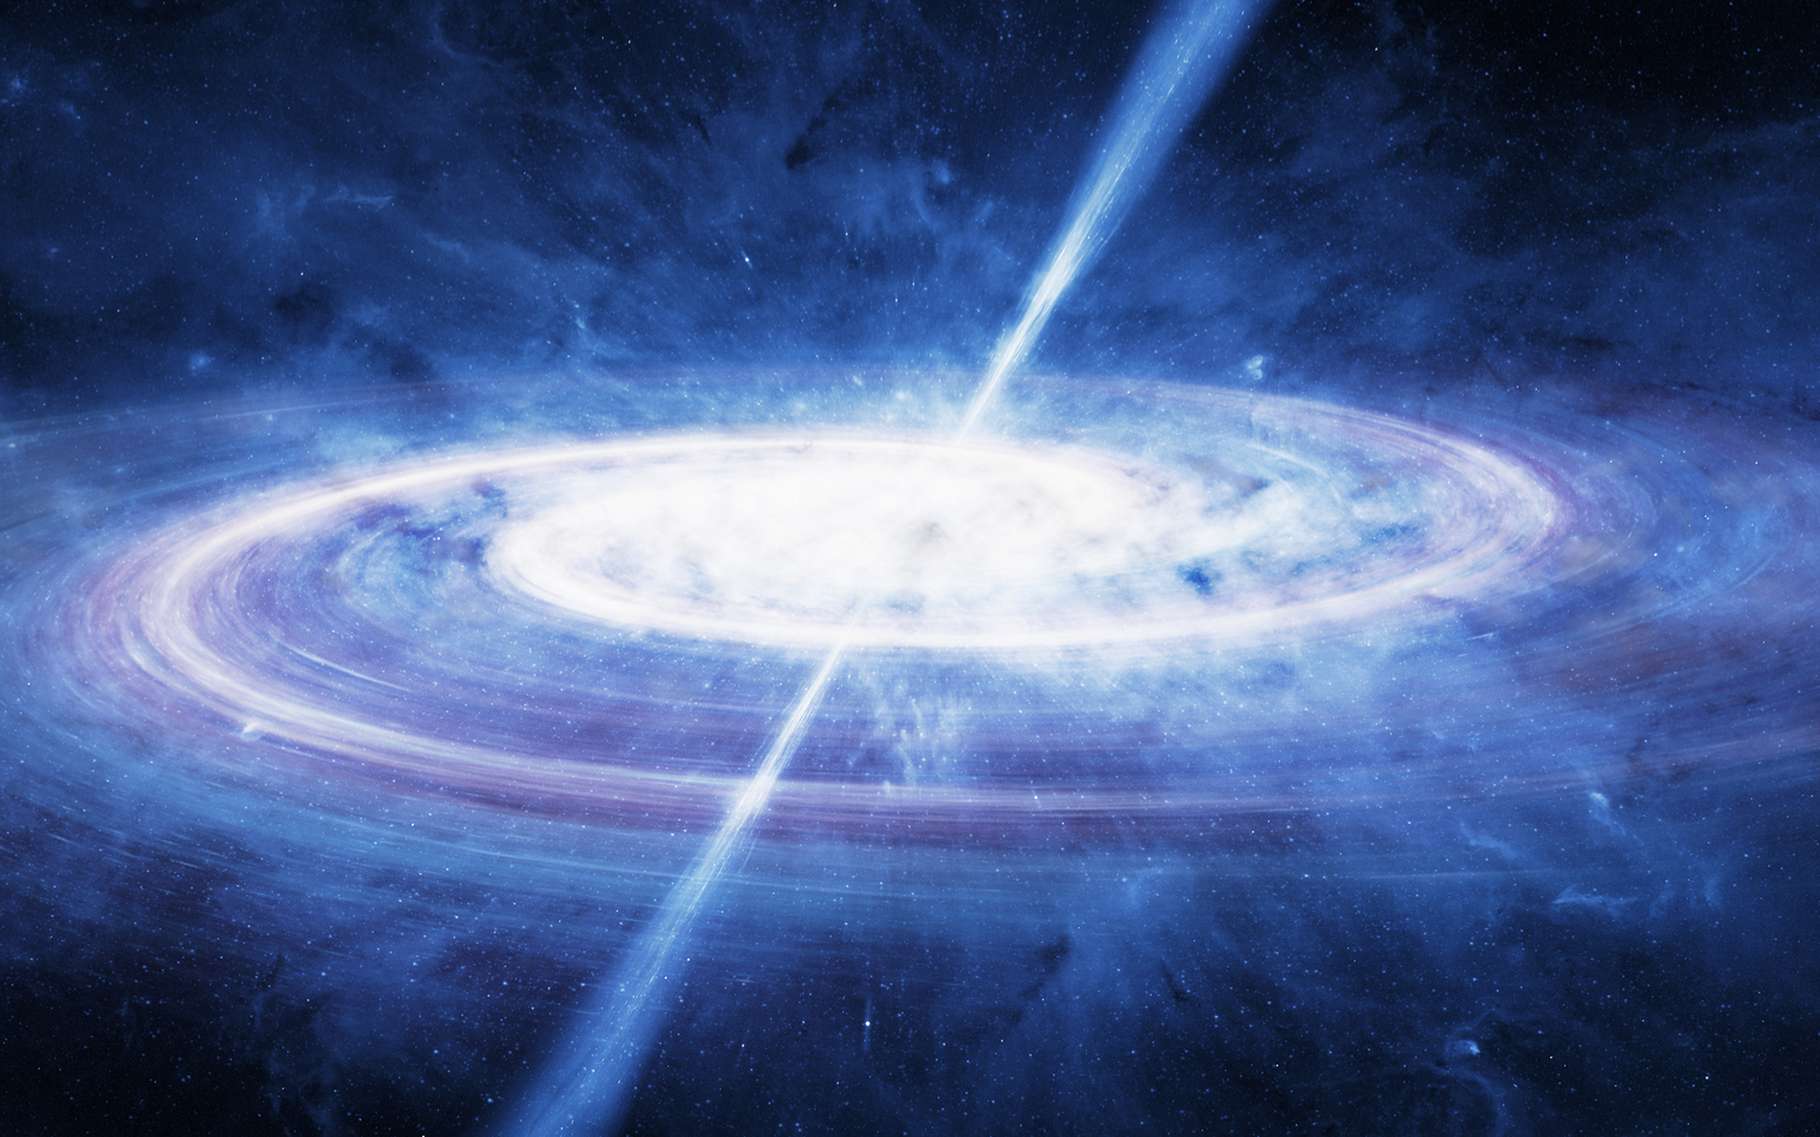 Des mesures réalisées sur des quasars (ici, en vue d’artiste) semblent montrer que la constante de structure fine est bien constante, dans le temps et dans l’espace. © Igor Zh, Shutterstock